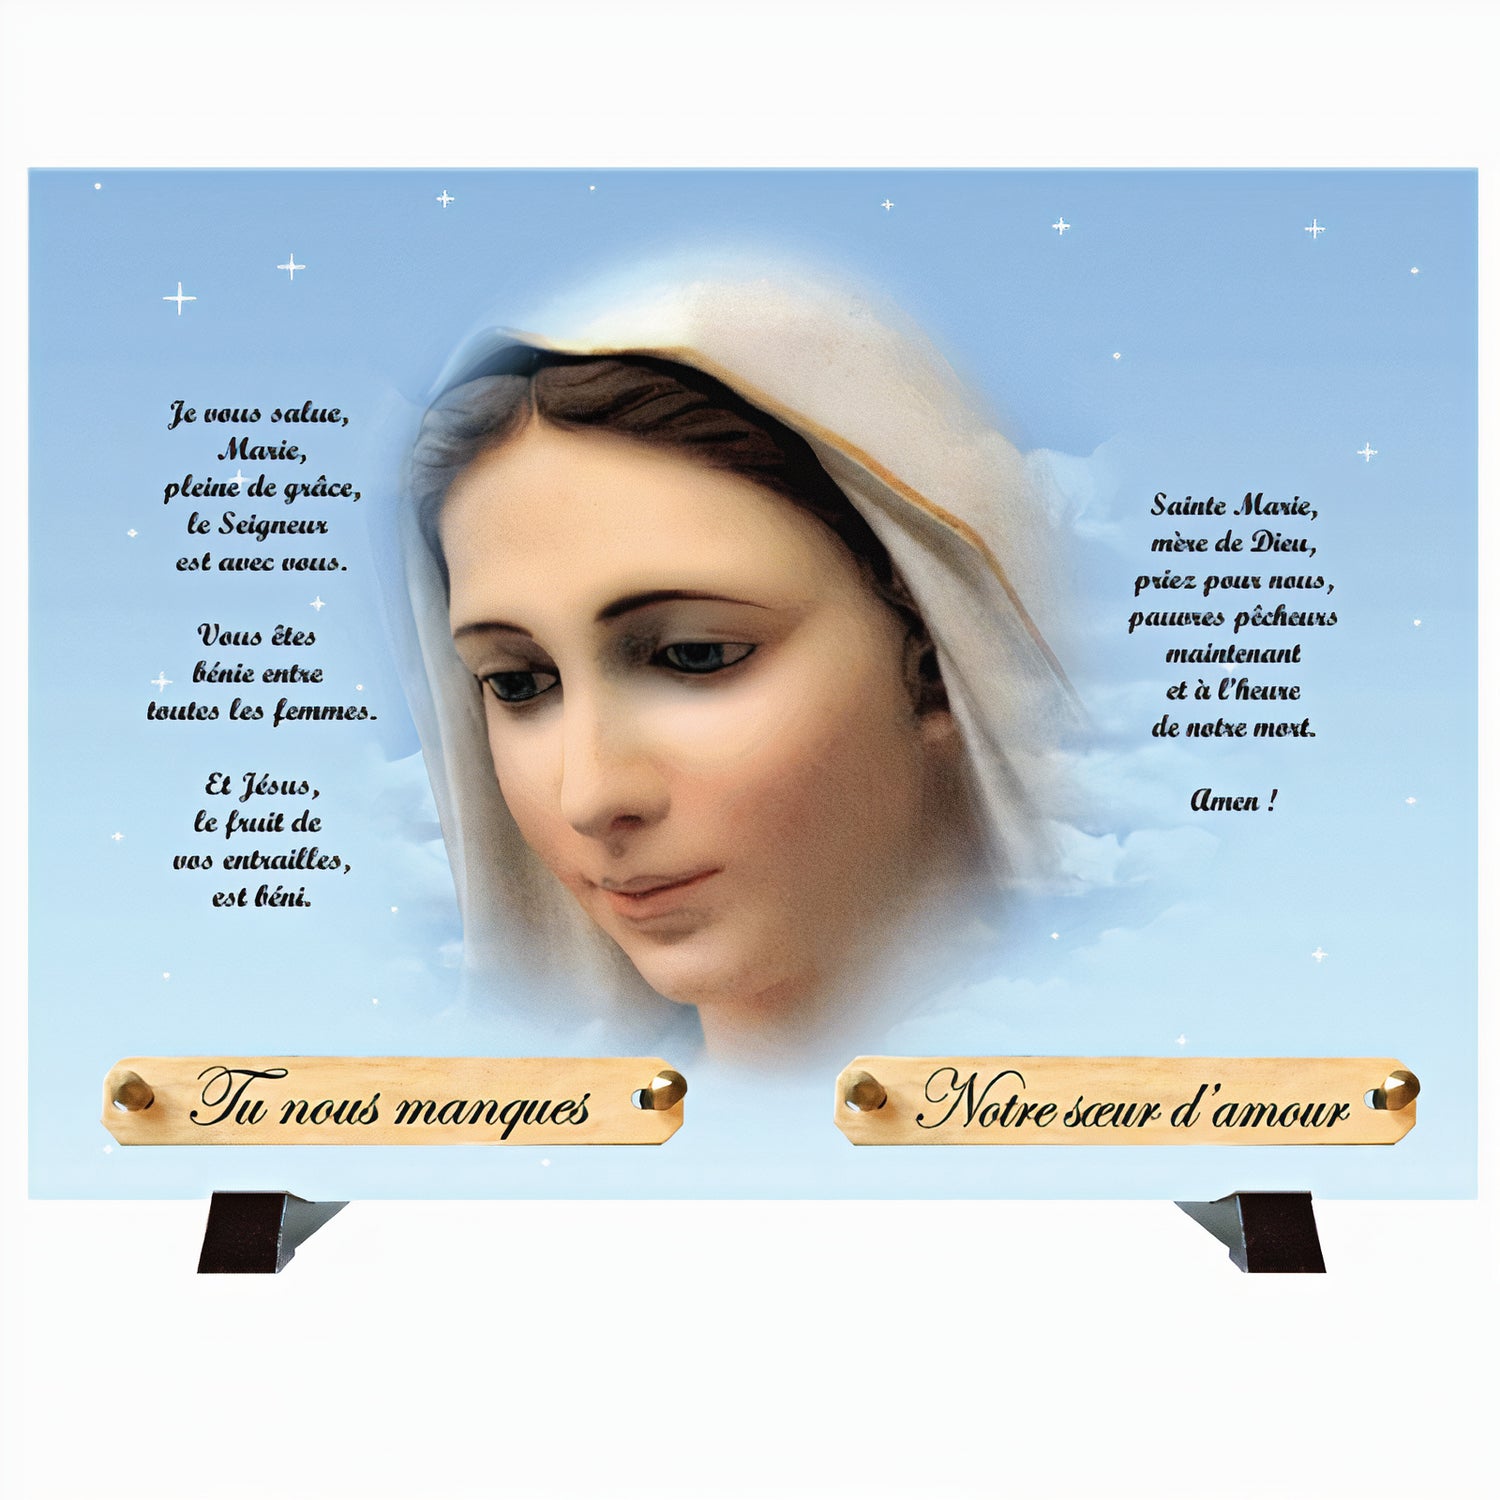 Plaque funéraire Vierge Marie